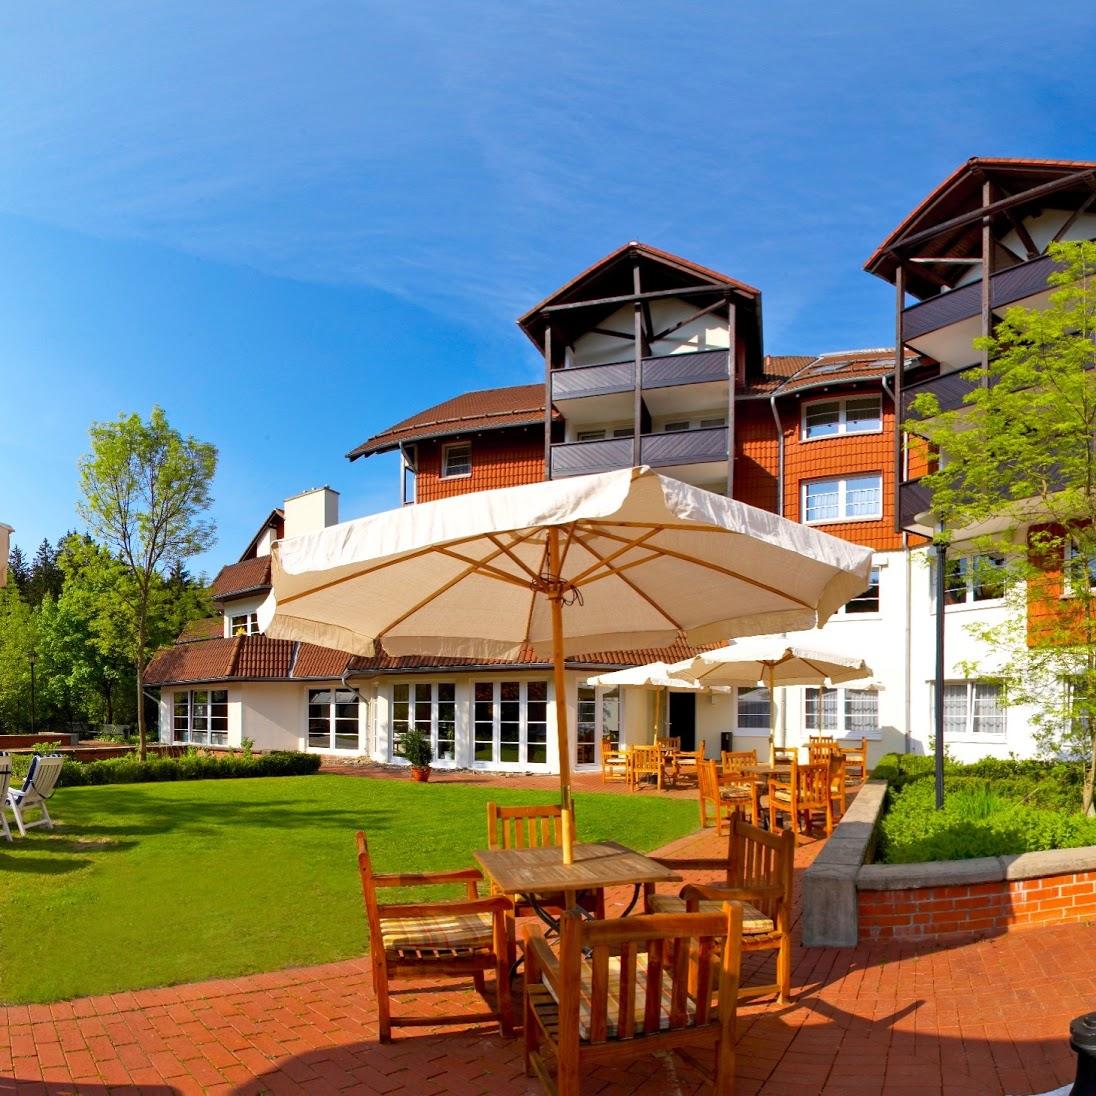 Restaurant "relexa hotel Harz-Wald" in Braunlage